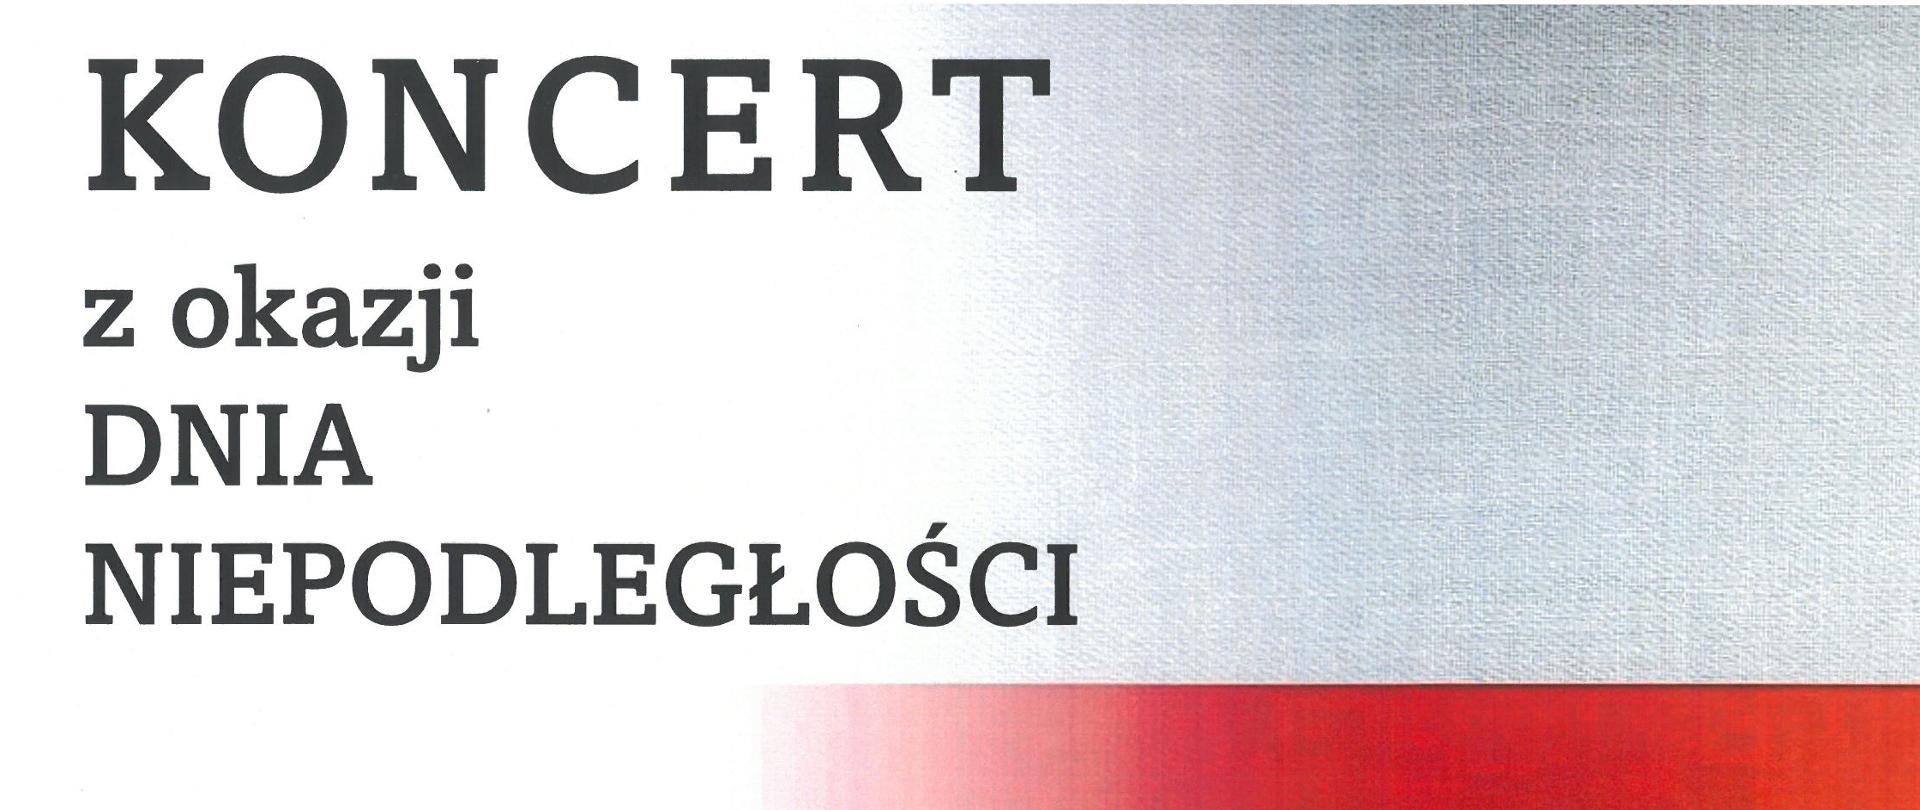 Plakat na biało czerwonym tle z informacją o koncercie w kolorze czarnym po stronie lewej